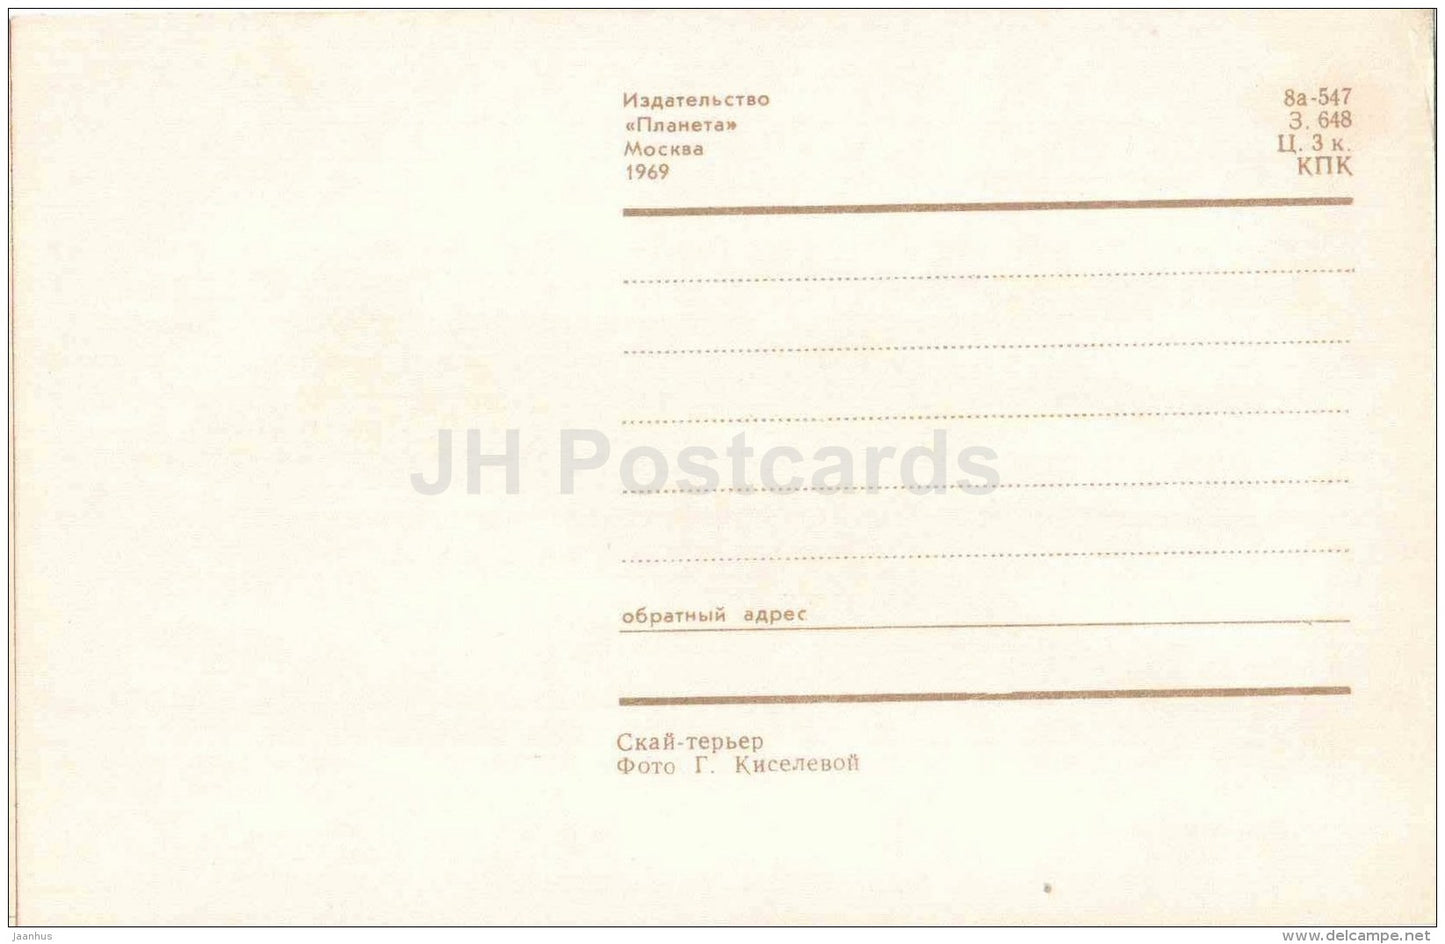 Skye Terrier - dog - 1969 - Russia USSR - unused - JH Postcards